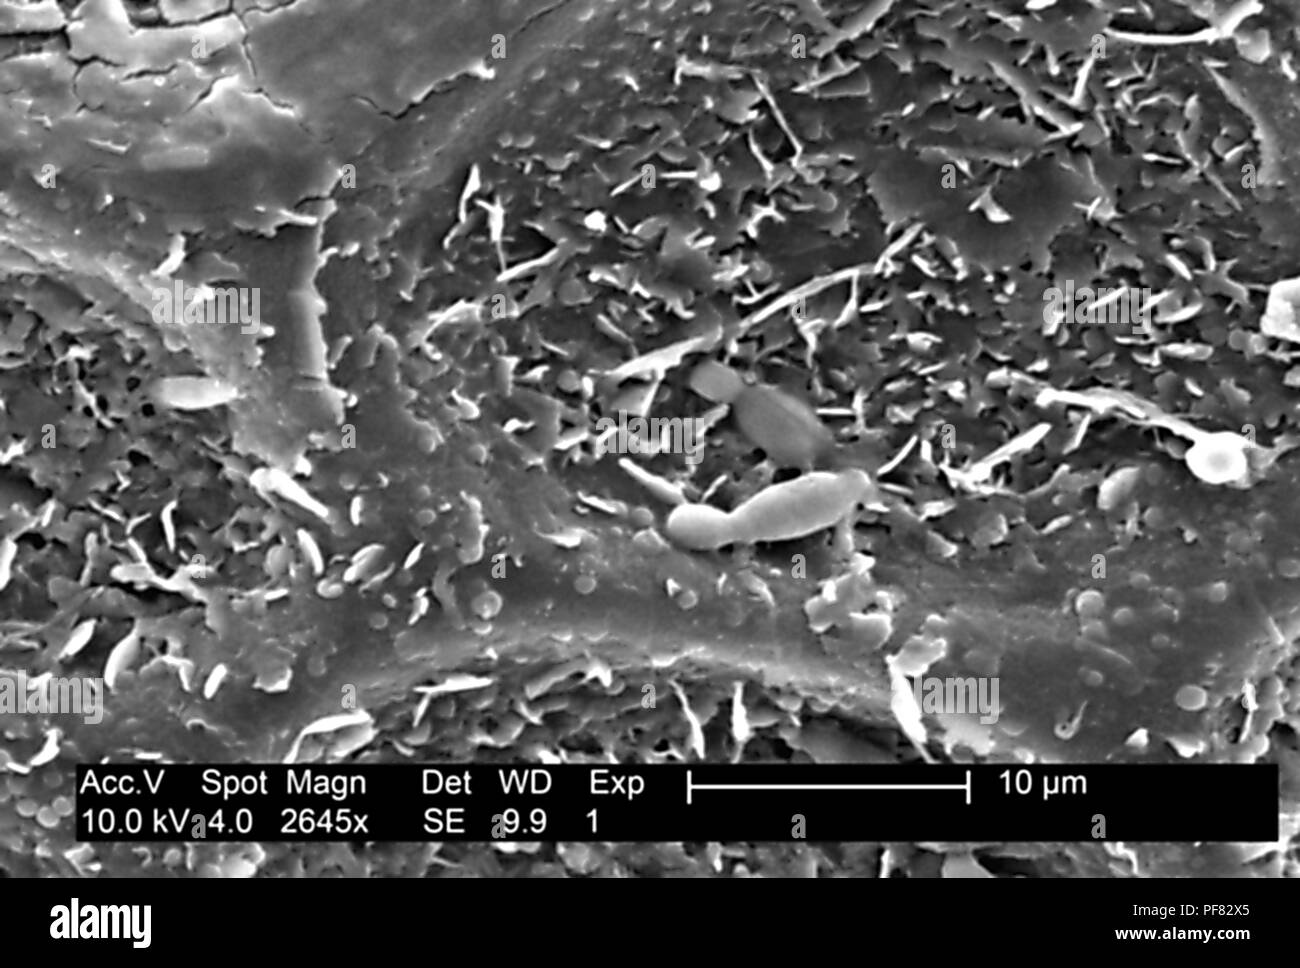 Superficie testurizzata dettagli trovati su un melone Honeydew (Cucumis melo), ha rivelato nel 2645x ingrandito electron microfotografia film, 2004. Immagine cortesia di centri per il controllo delle malattie (CDC). () Foto Stock